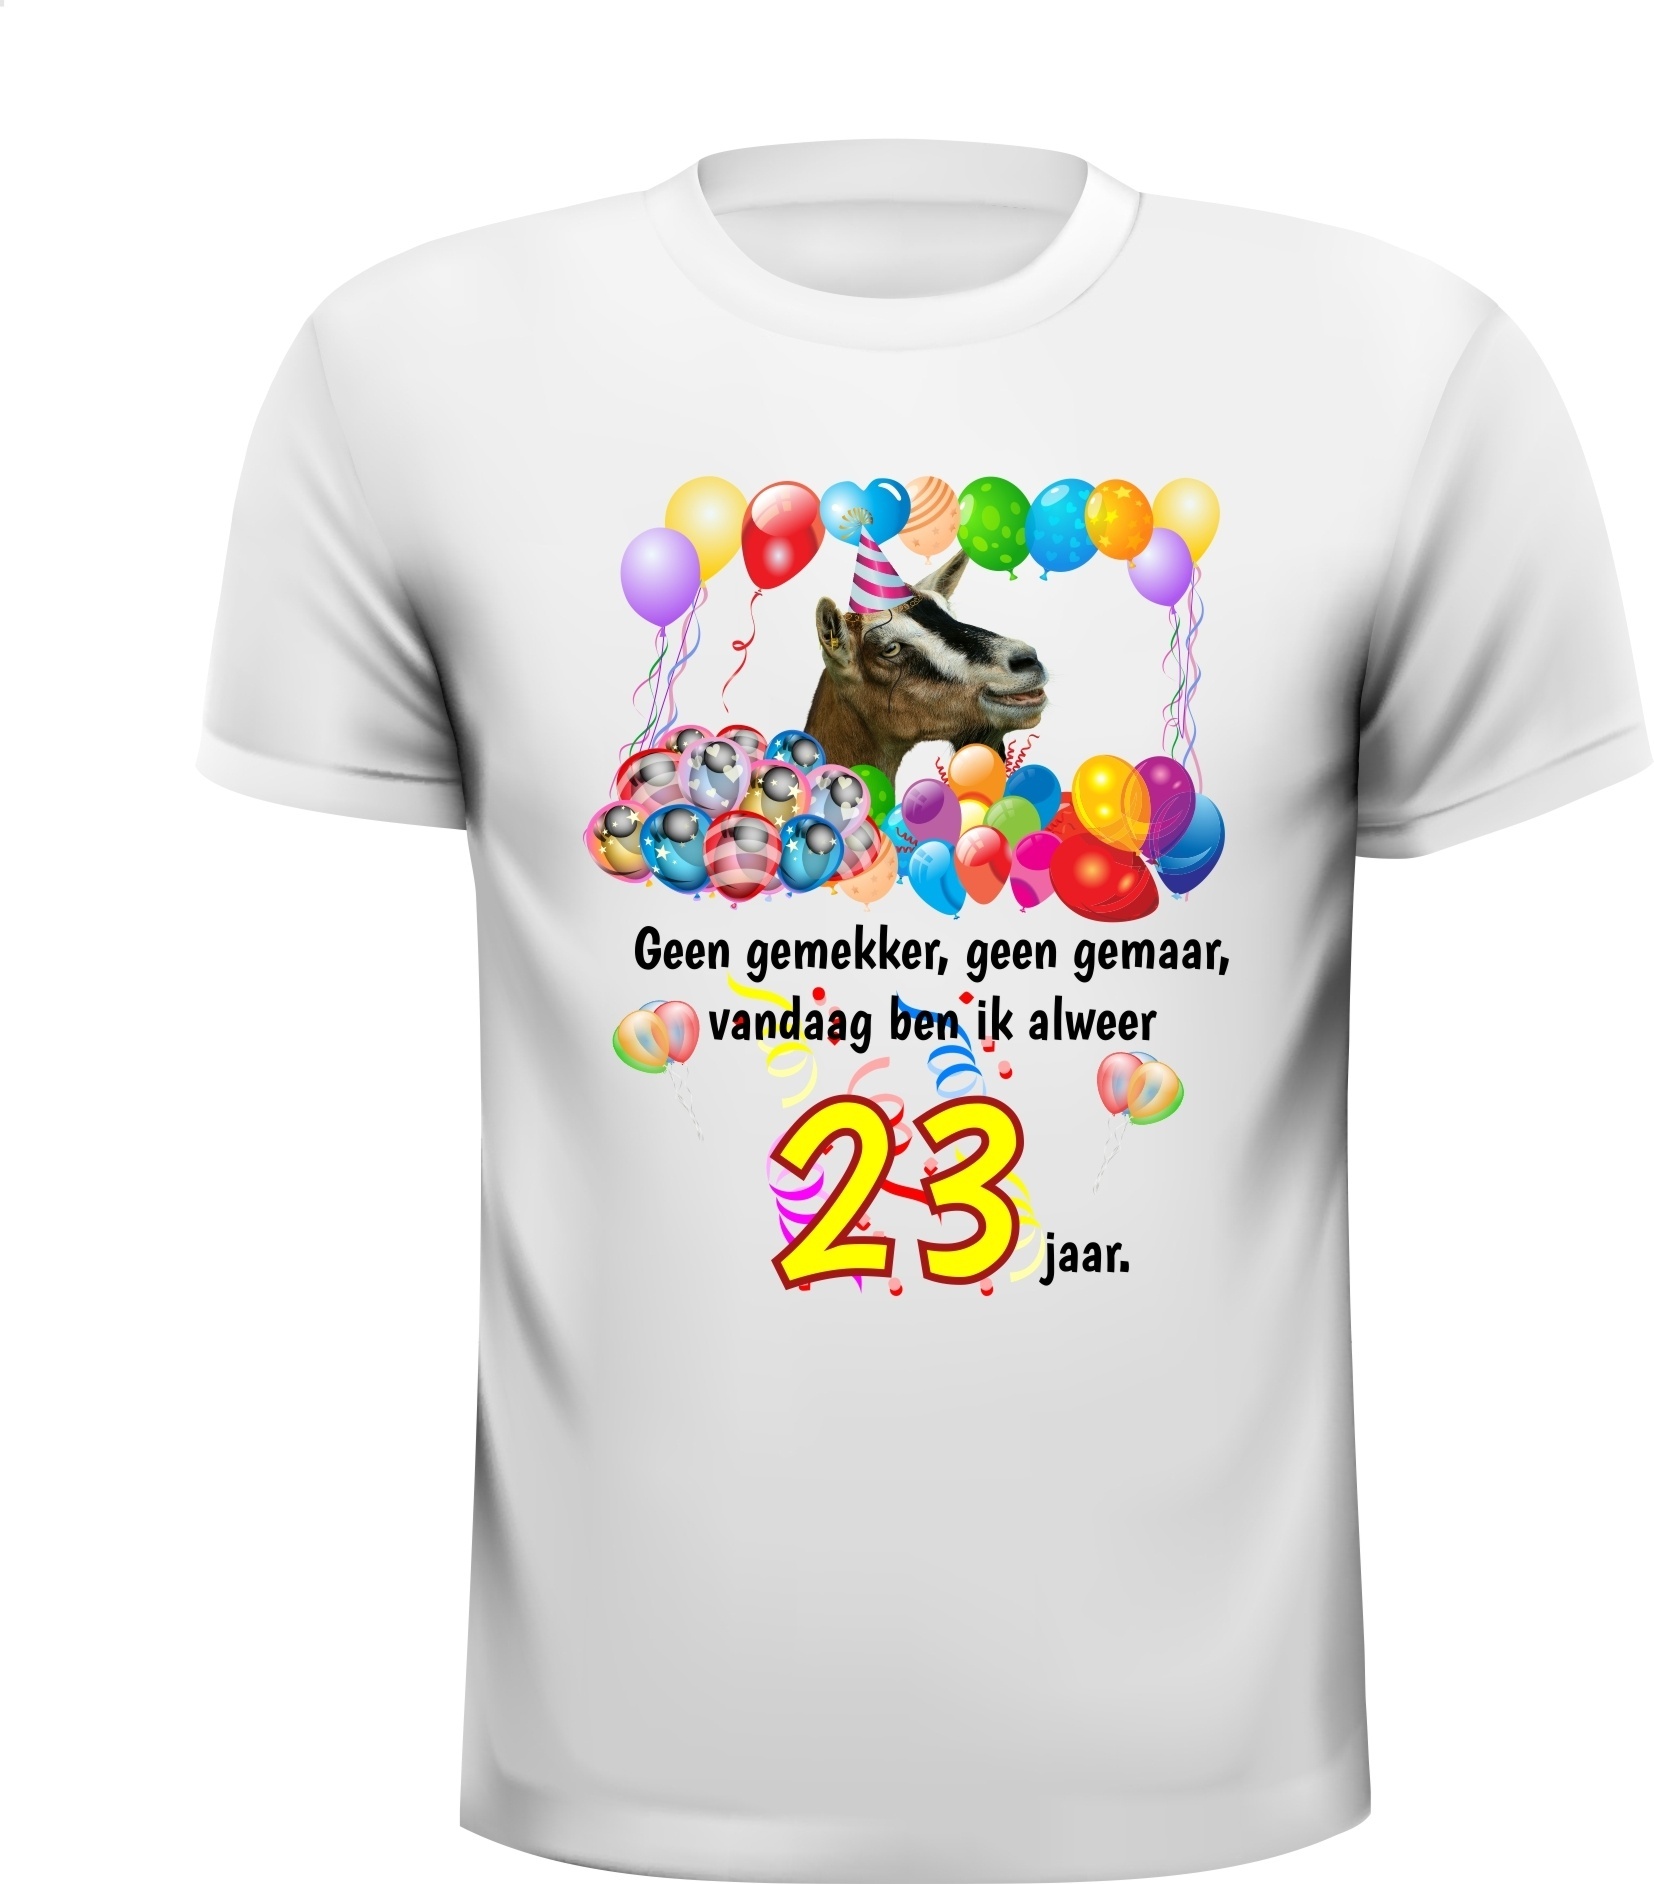 23 jaar leeftijd fun verjaardag shirt met leuke print en tekst